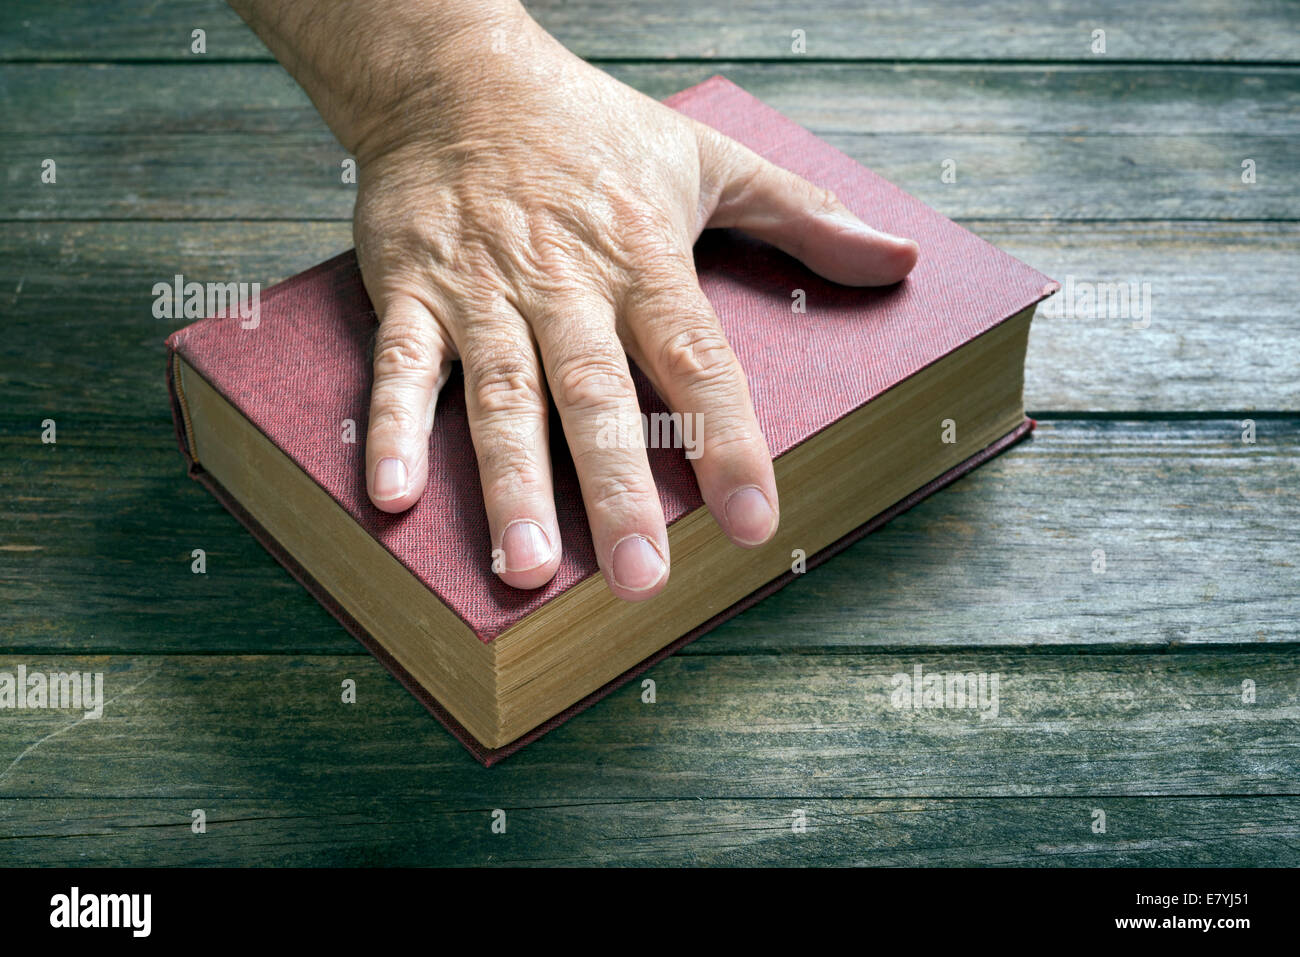 Ein Mann ruht seine linke Hand auf ein rotes Buch an einem Tisch Stockfoto